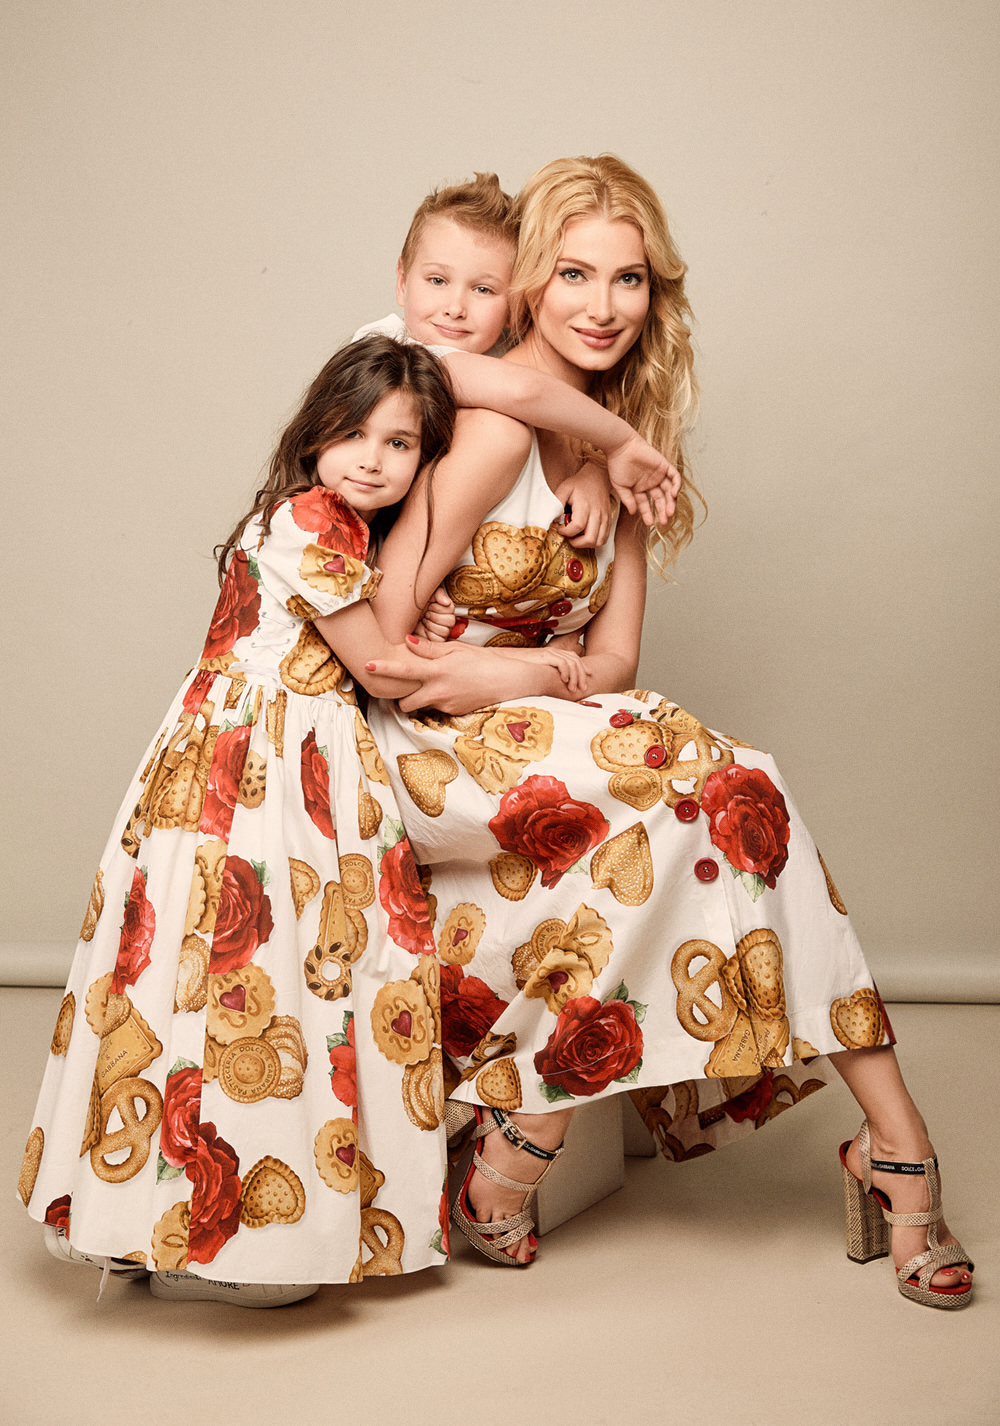 Лана Кауфман, Семейные правила стиля в спецпроекте Dolce & Gabbana ко Дню матери